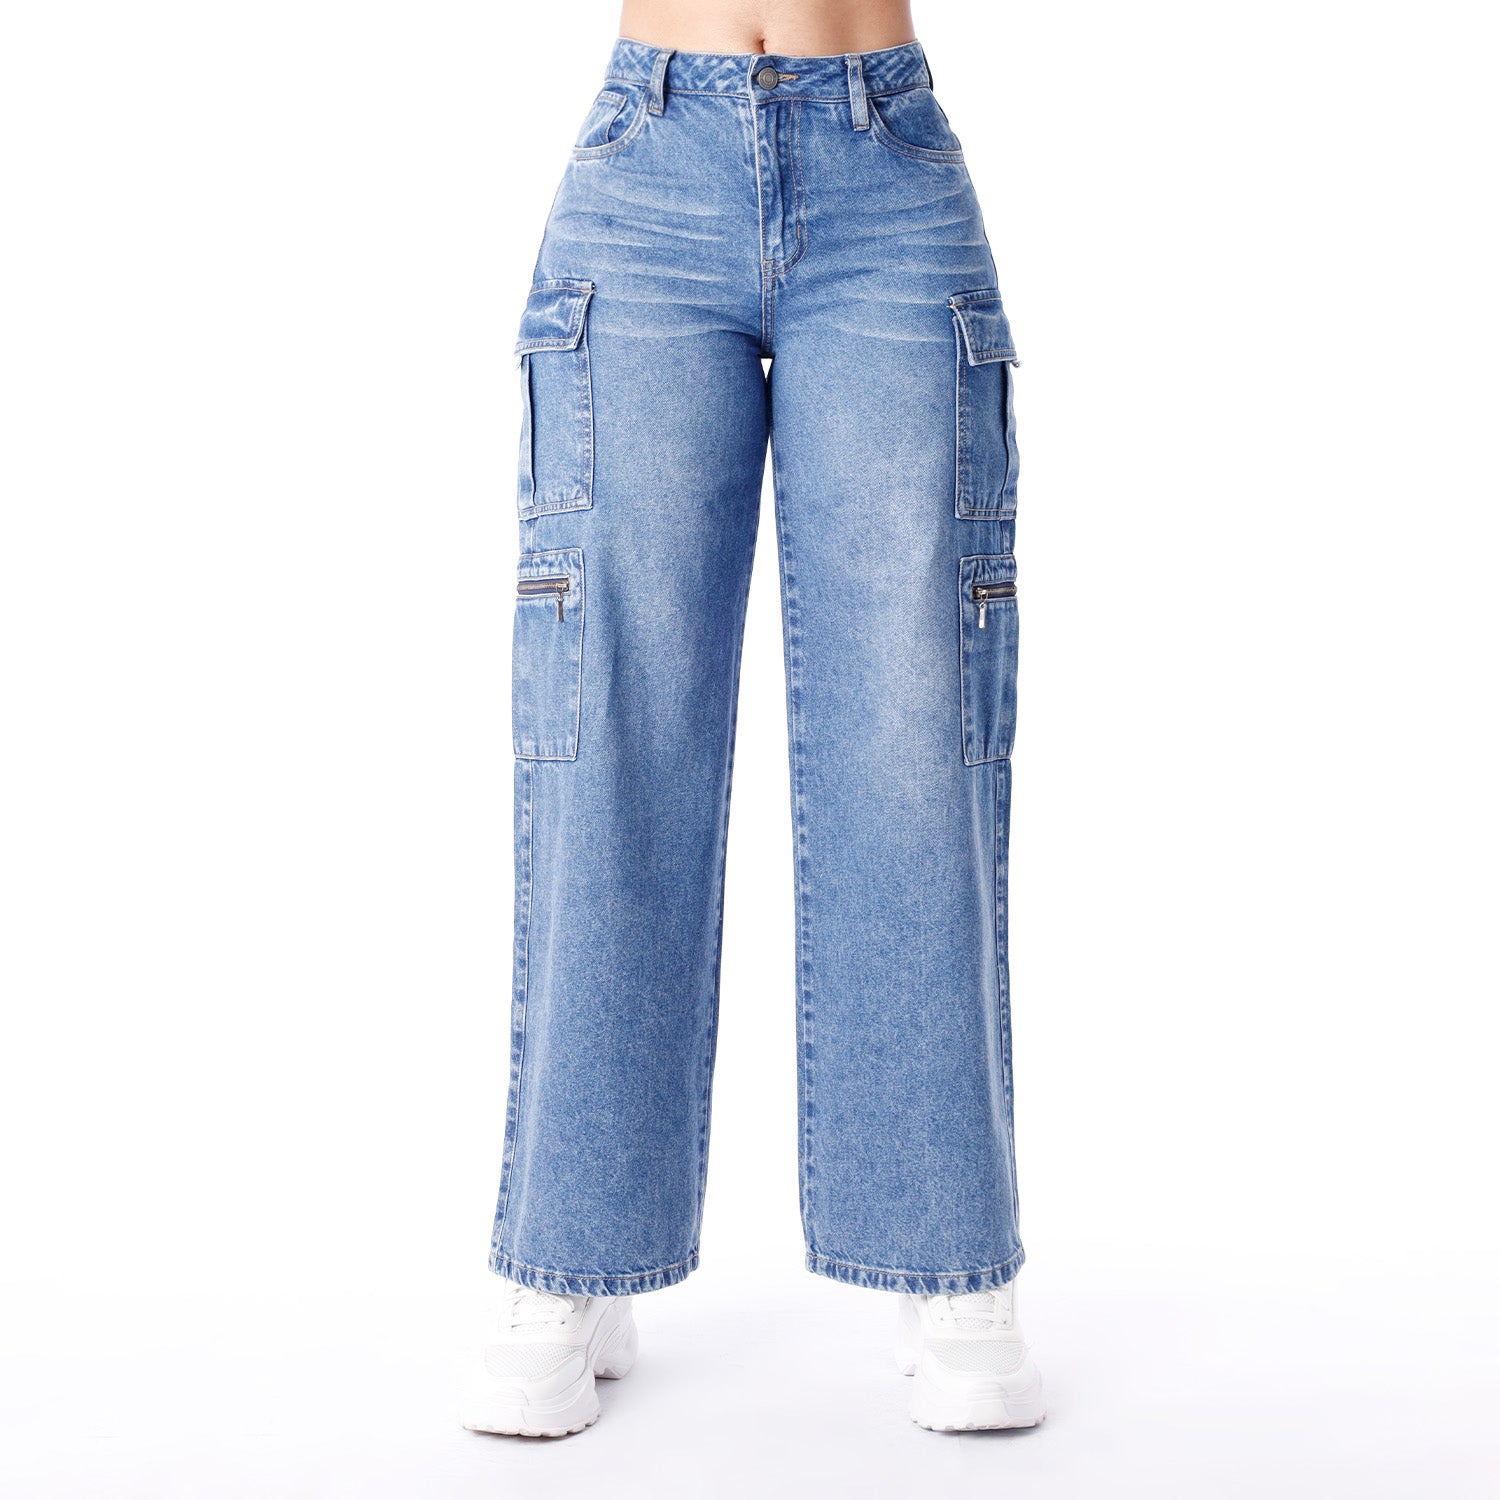 Nuevo estilo Denim Jeans para mujeres de la pierna con cremallera bolsillos  mono elástico pantalones pantalones vaqueros Lápiz - China Las mujeres  Mujer jeans y pantalones de Dril de algodón precio